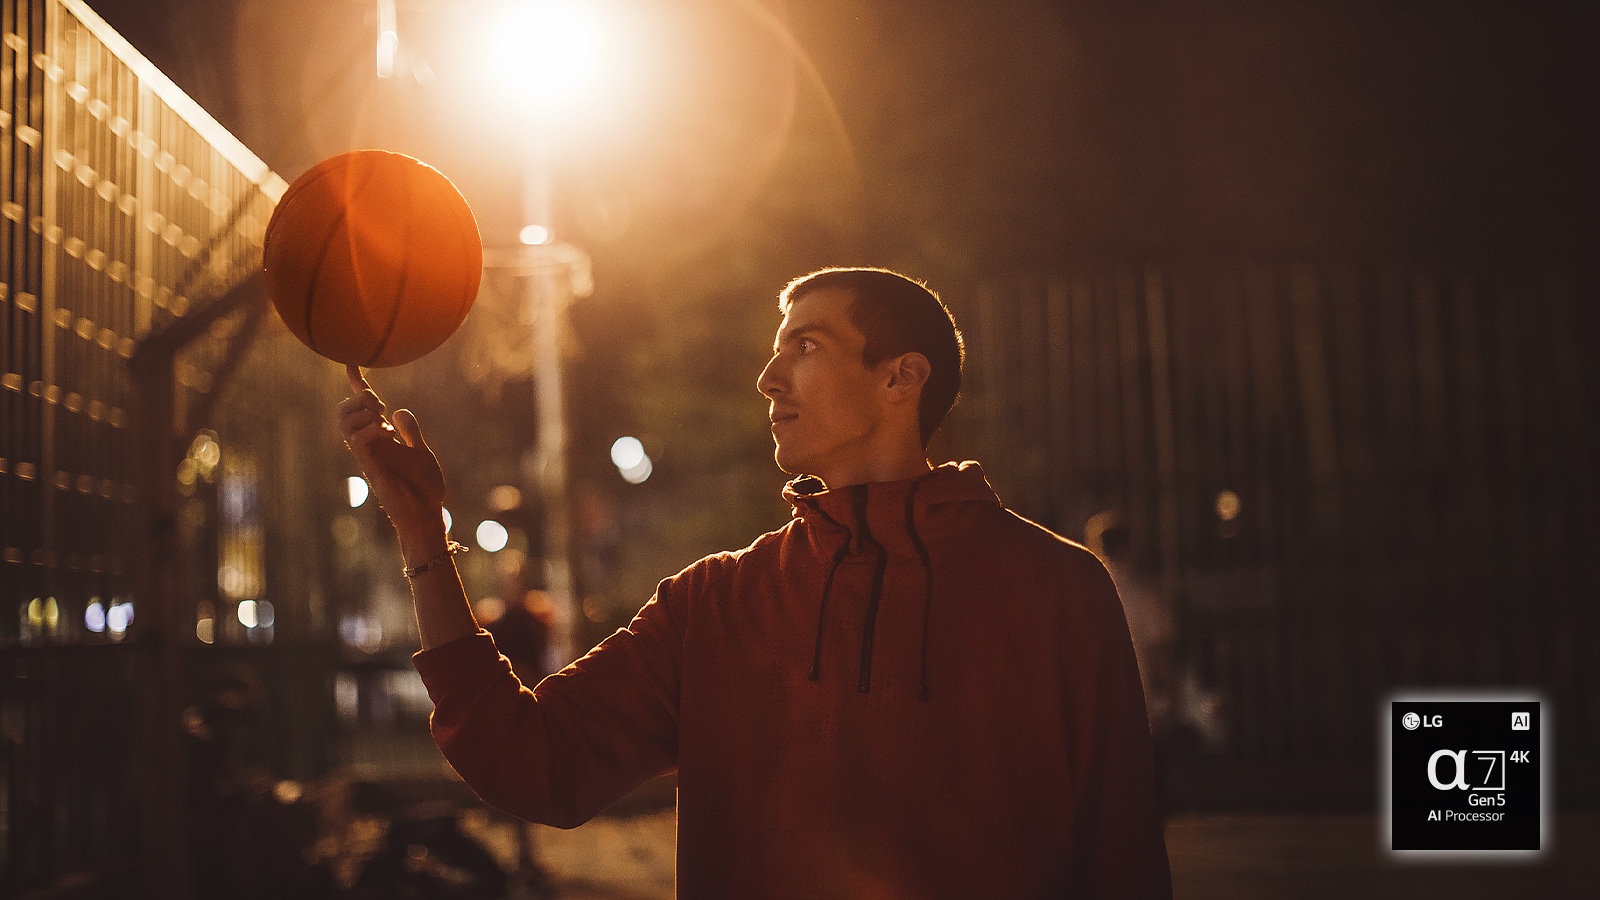 Мужчина на баскетбольной площадке ночью крутит баскетбольный мяч на пальце.